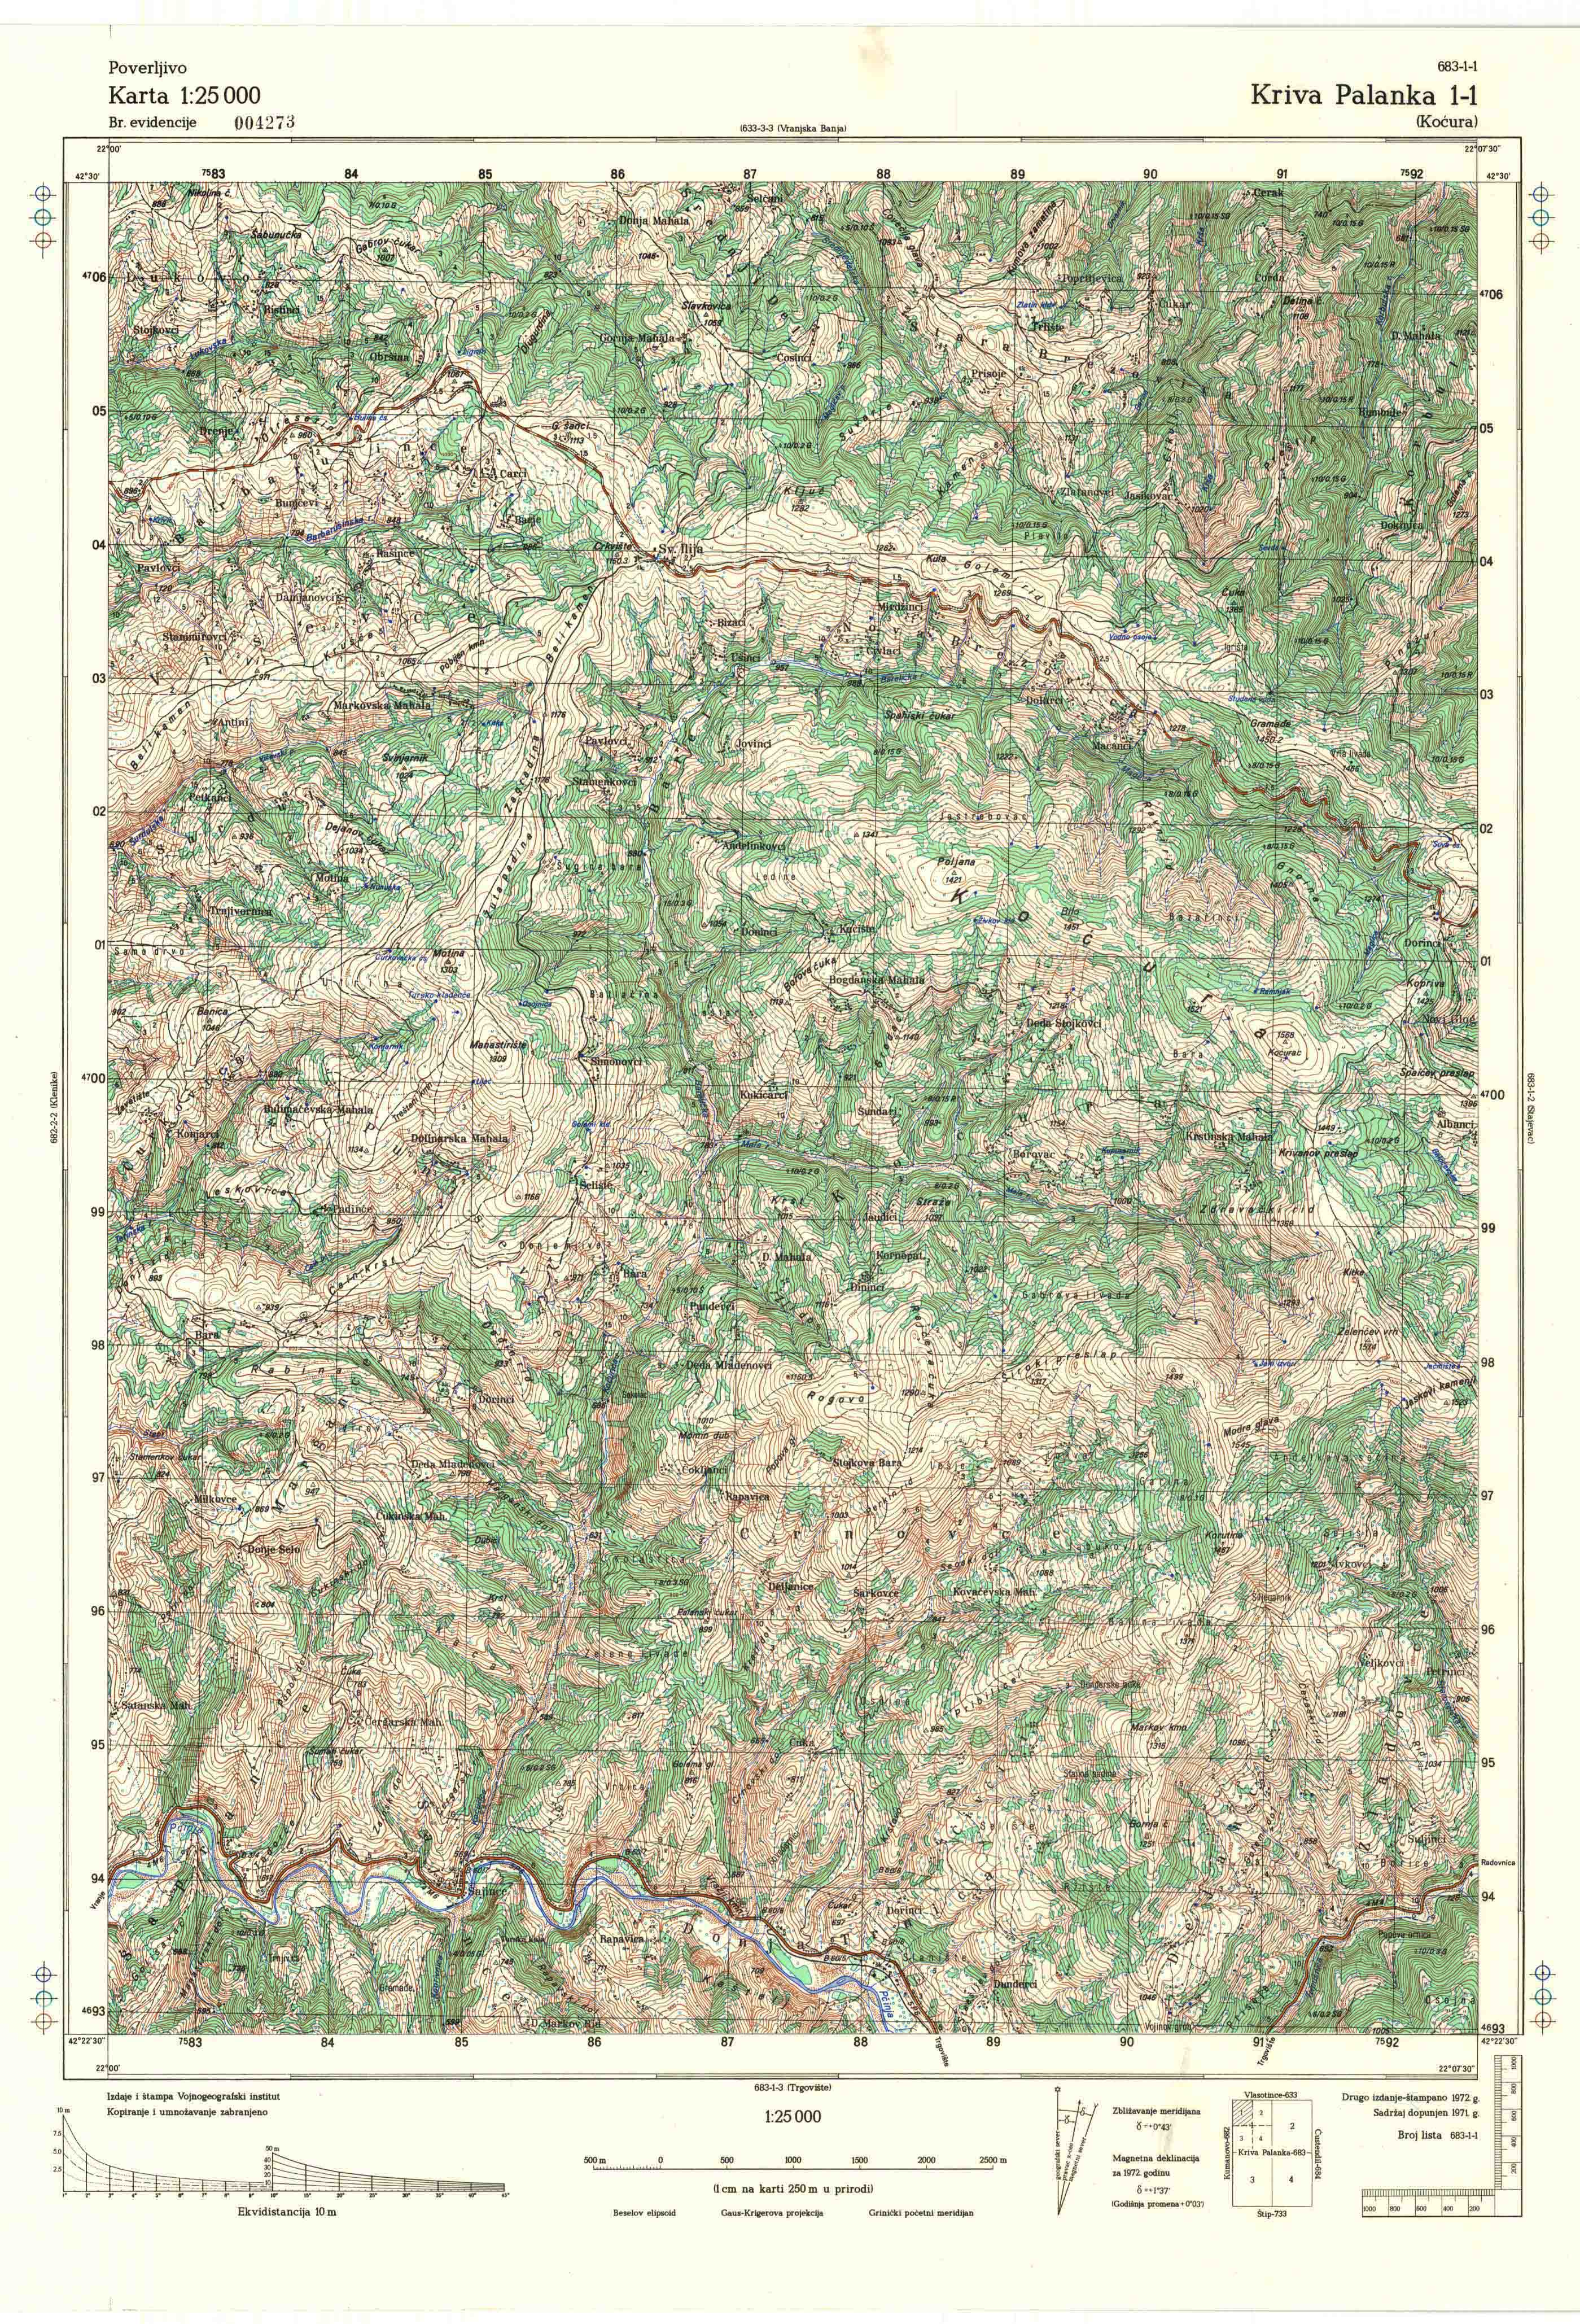  topografska karta makedonije 25000 JNA  Kriva Palanka